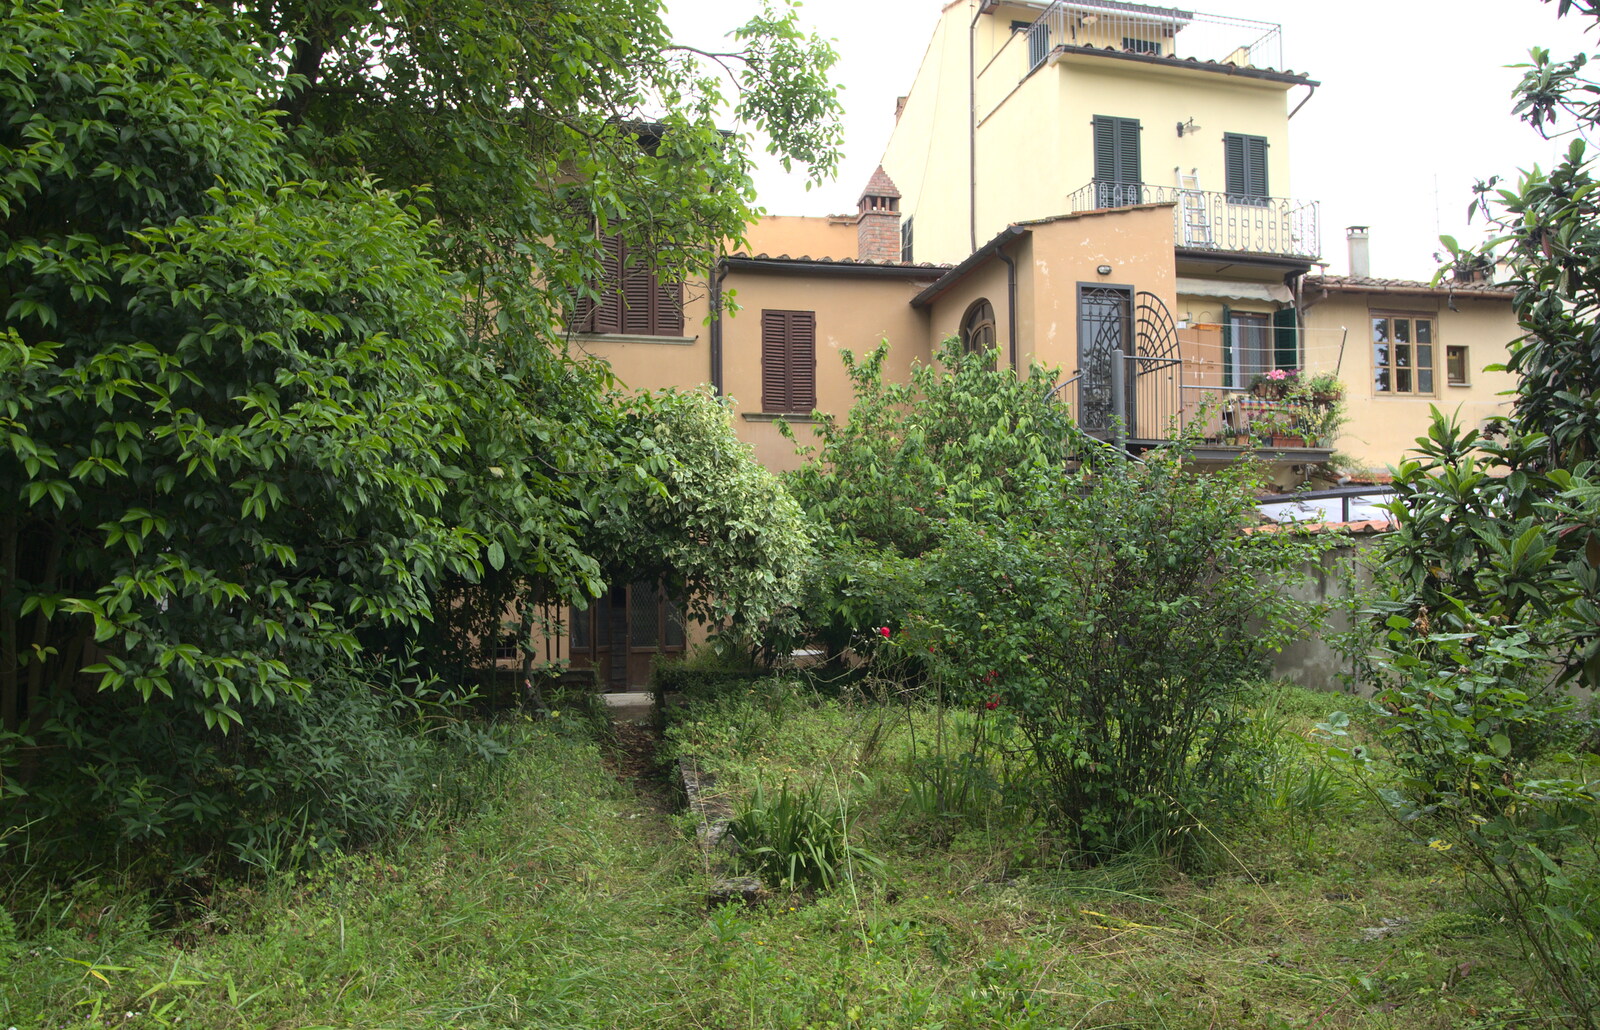 Marconi, Arezzo and the Sagra del Maccherone Festival, Battifolle, Tuscany - 9th June 2013: The overgrown garden